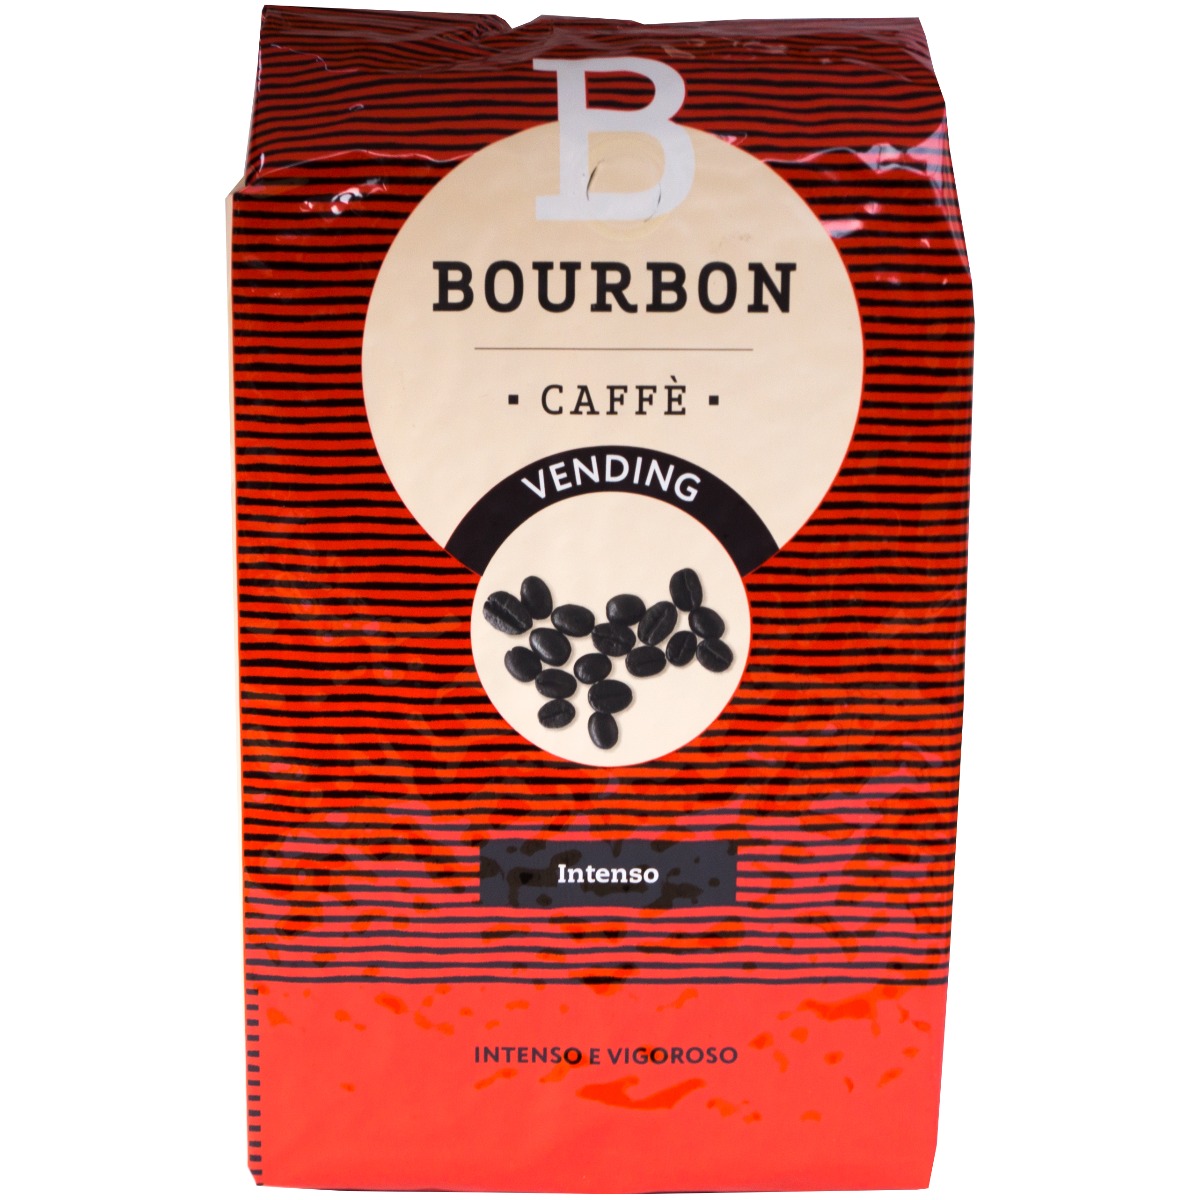 Lavazza Bourbon Vending Intenso koffiebonen 1 kilo